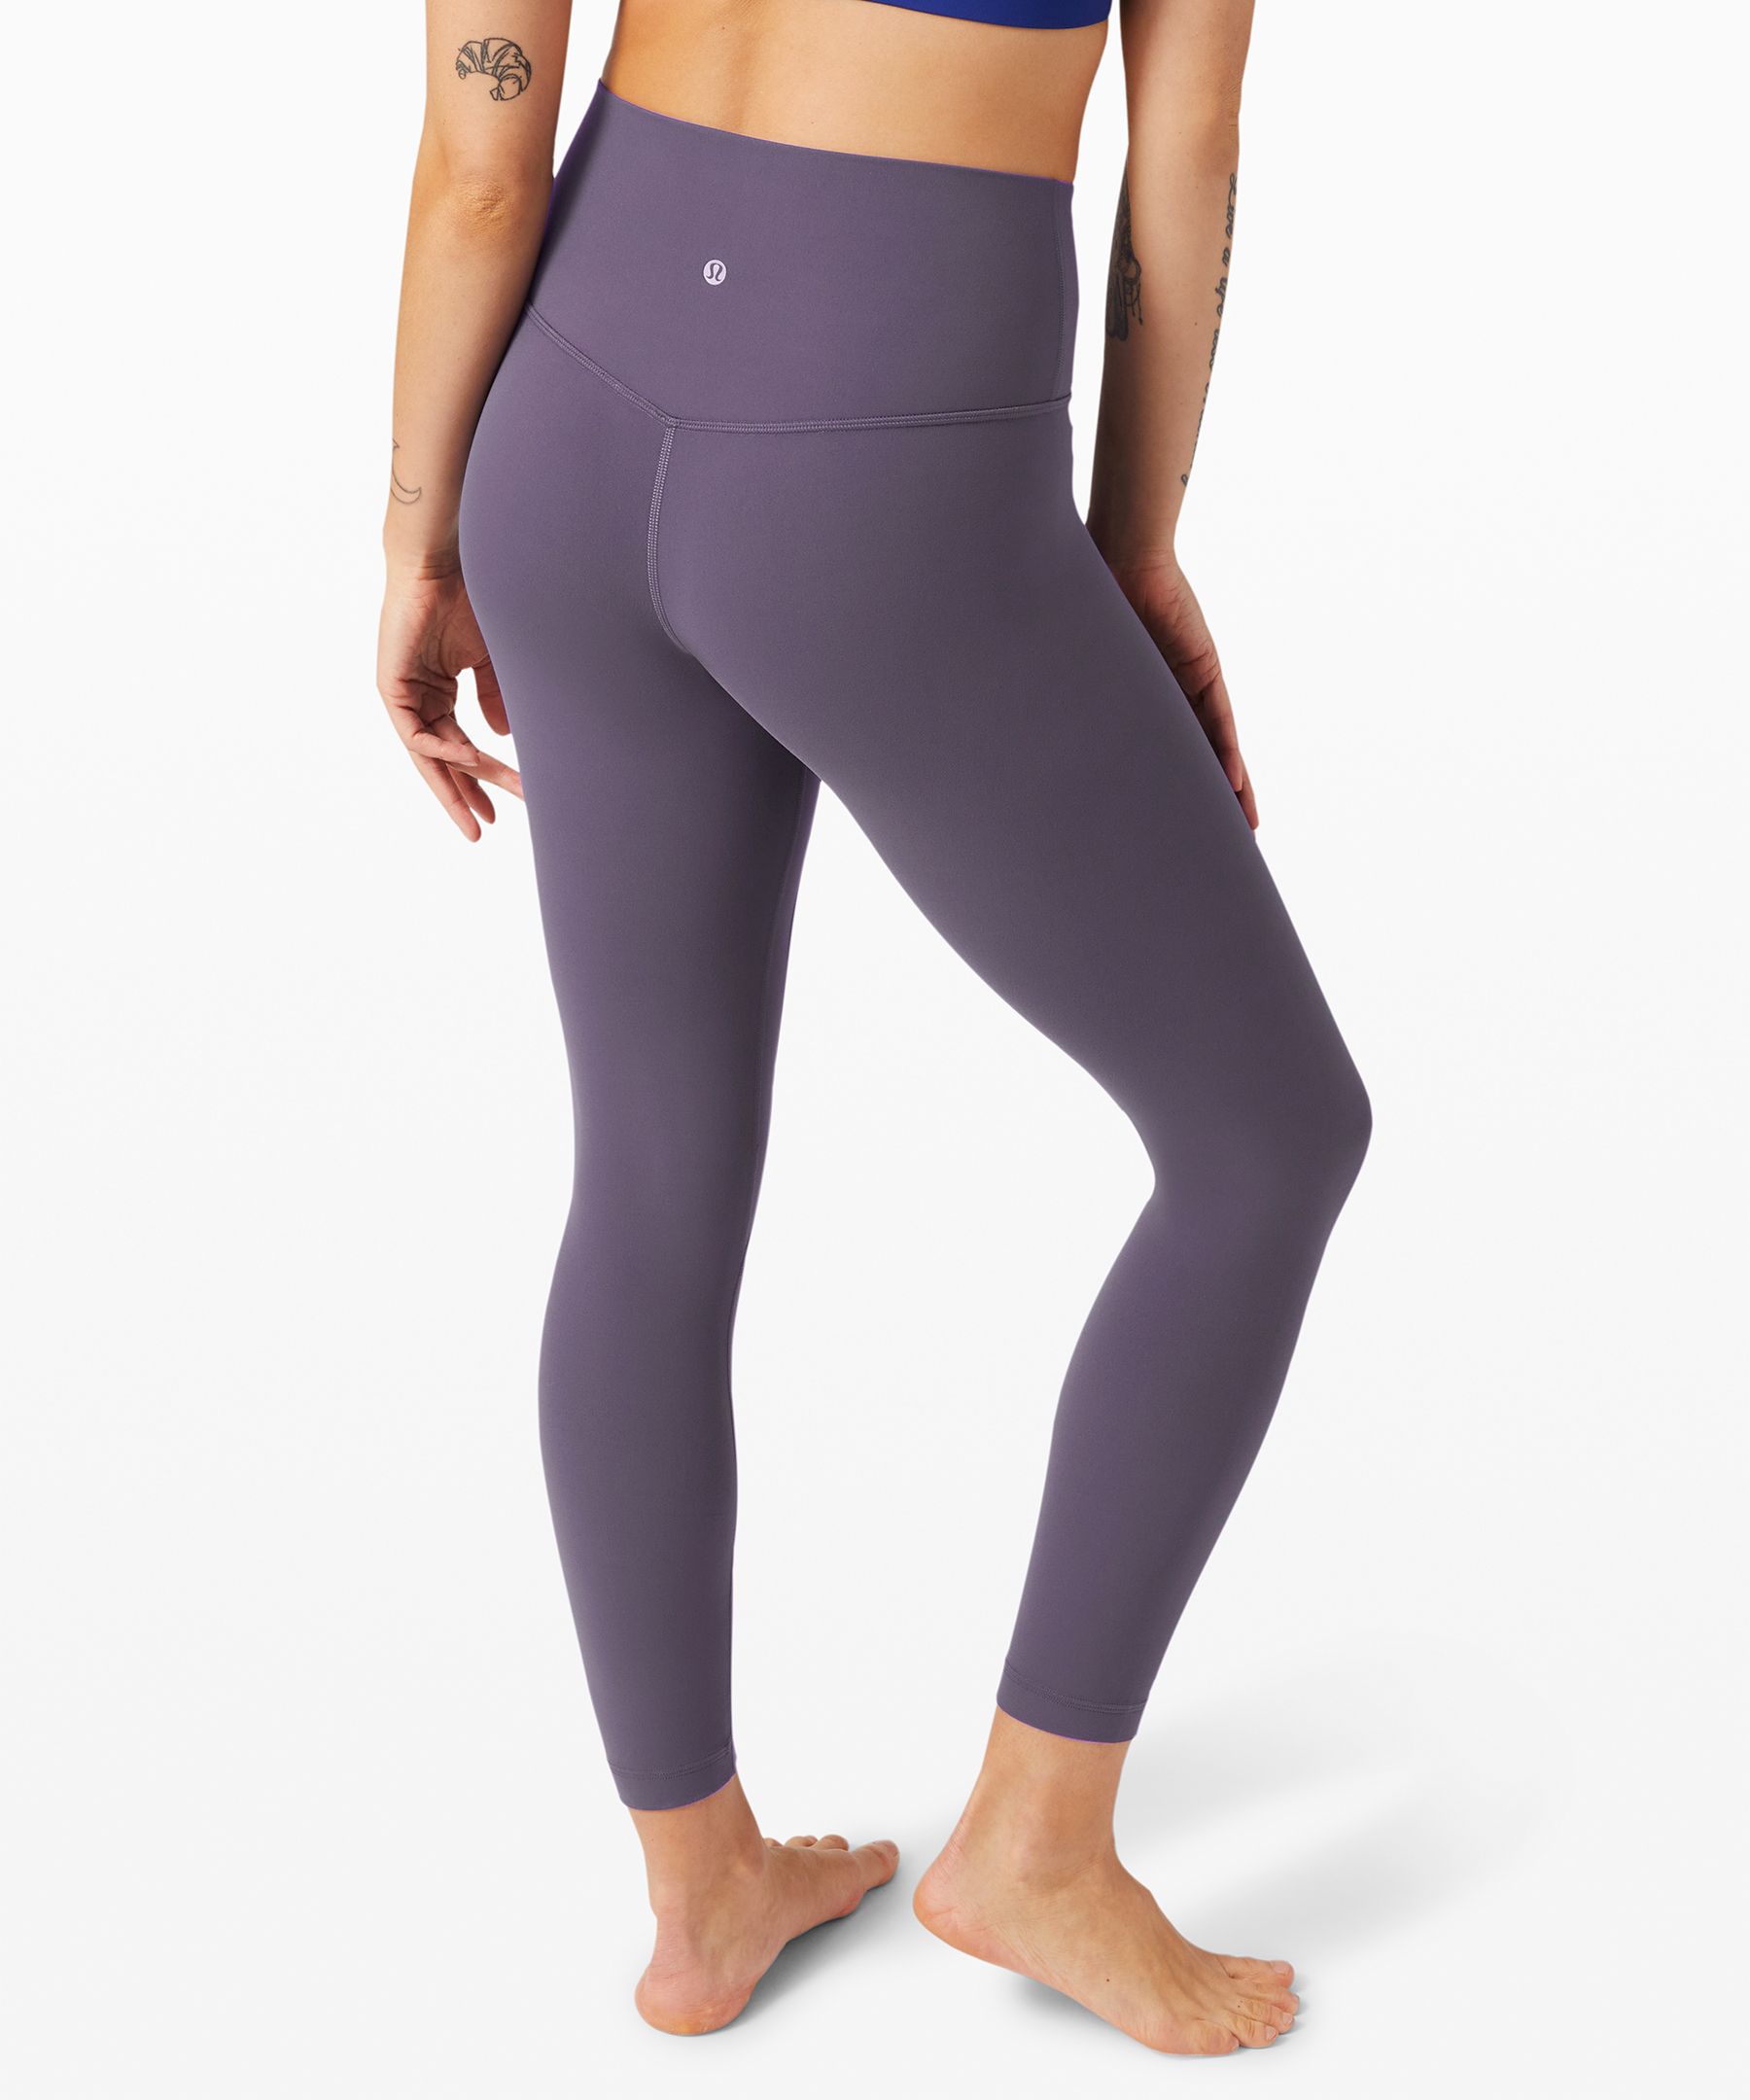 lululemon athletica, Pants & Jumpsuits, Brand New Lululemon Light Purple  Align High Rise Leggings Highrise 25